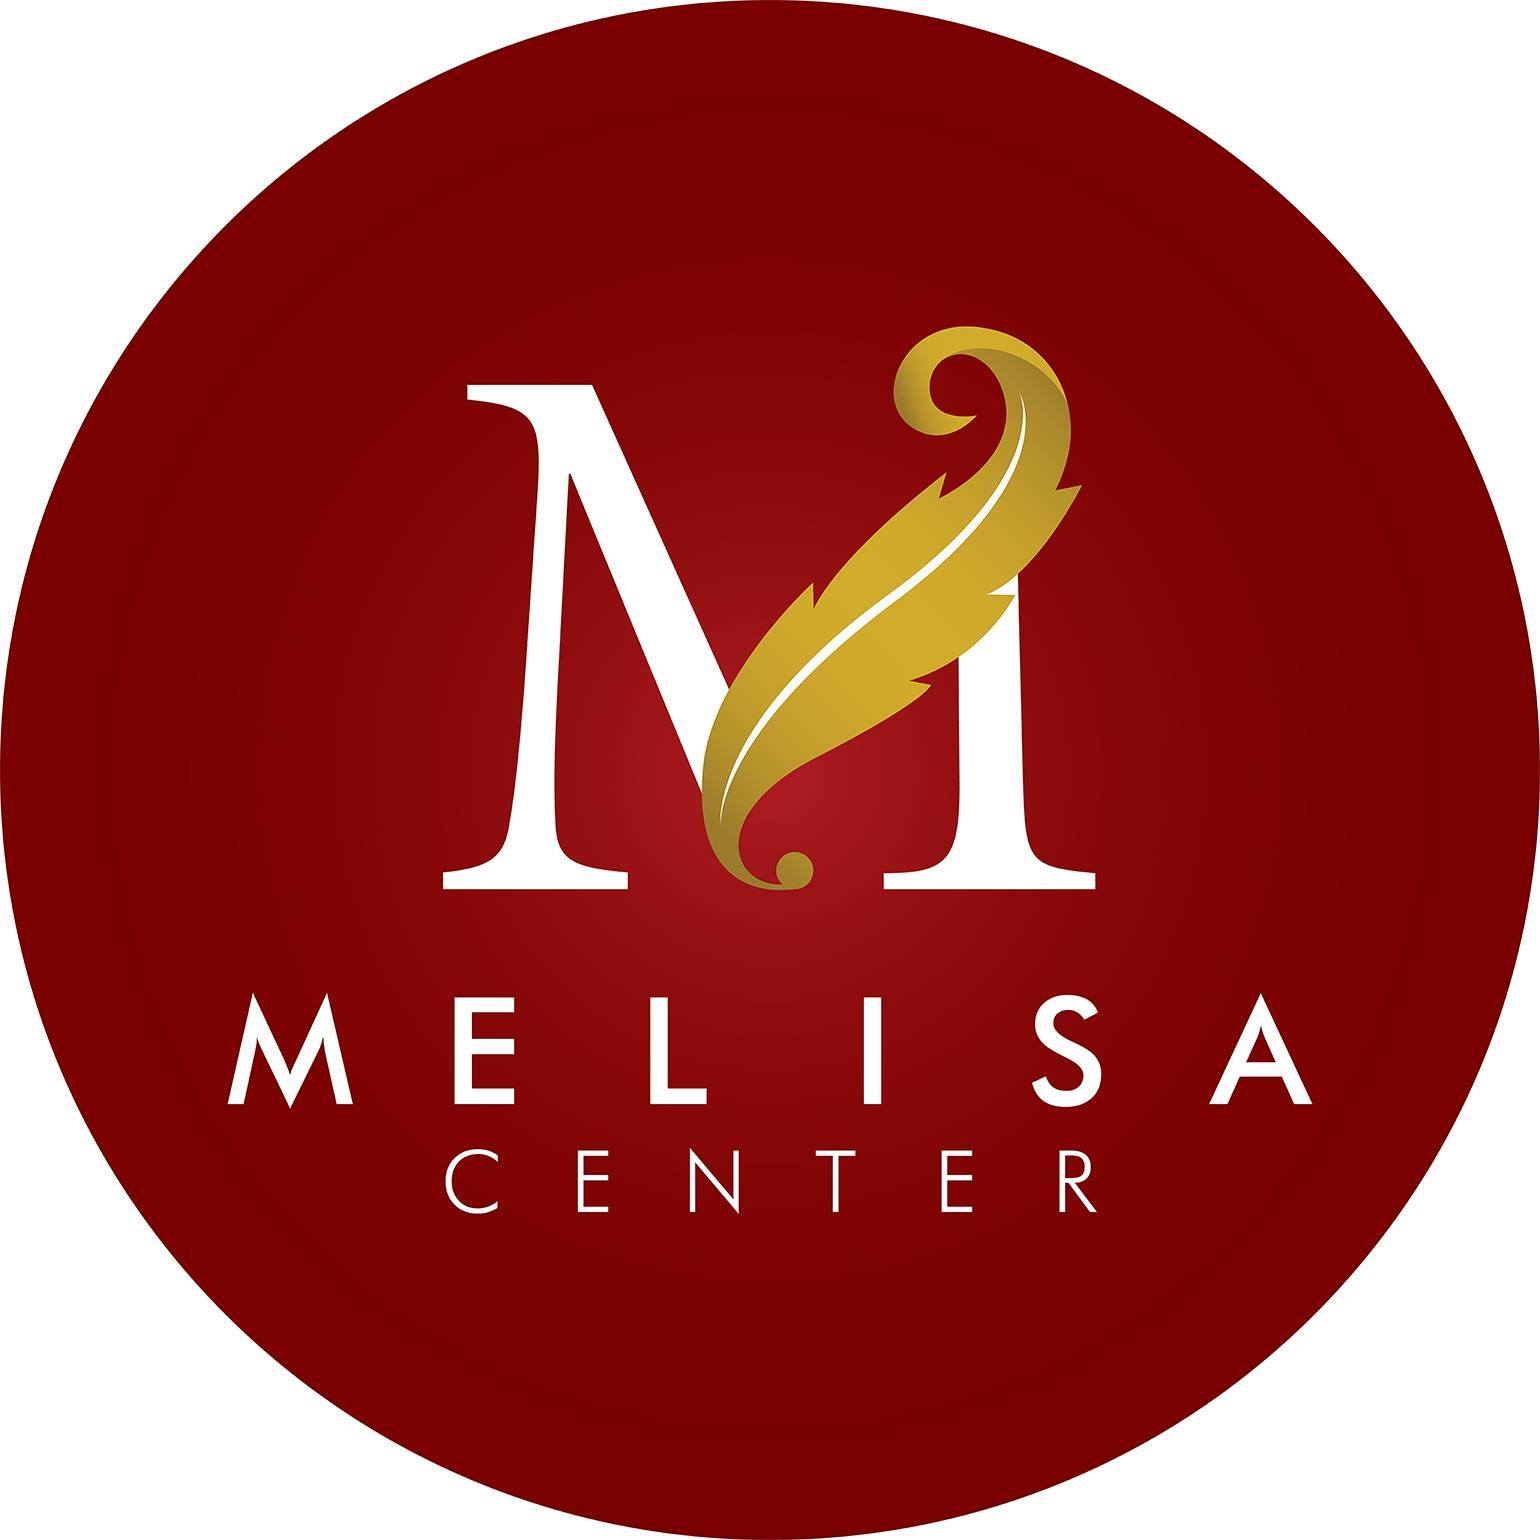 Trung Tâm Tiệc Cưới - Hội Nghị Melisa Center